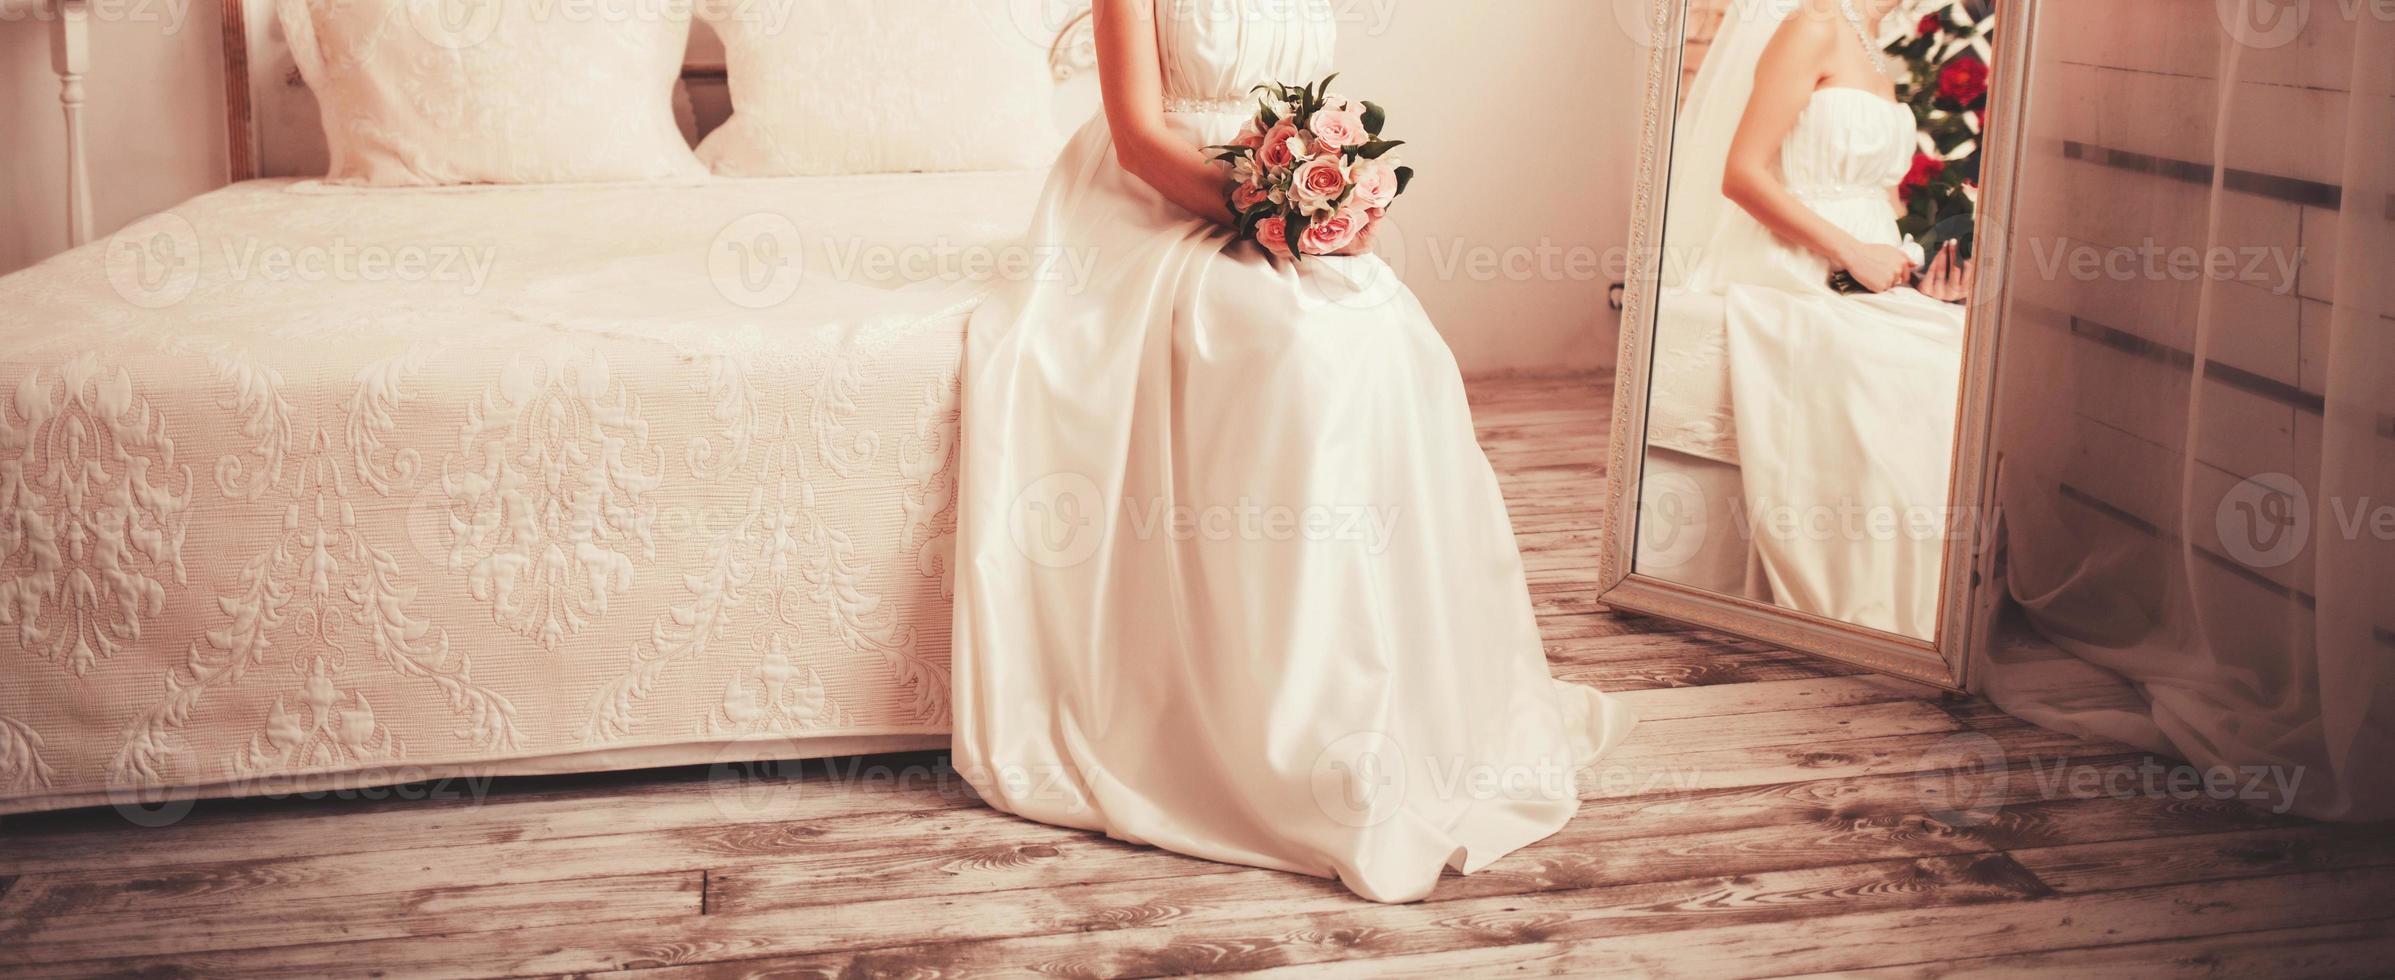 hermosa novia en un vestido de novia foto